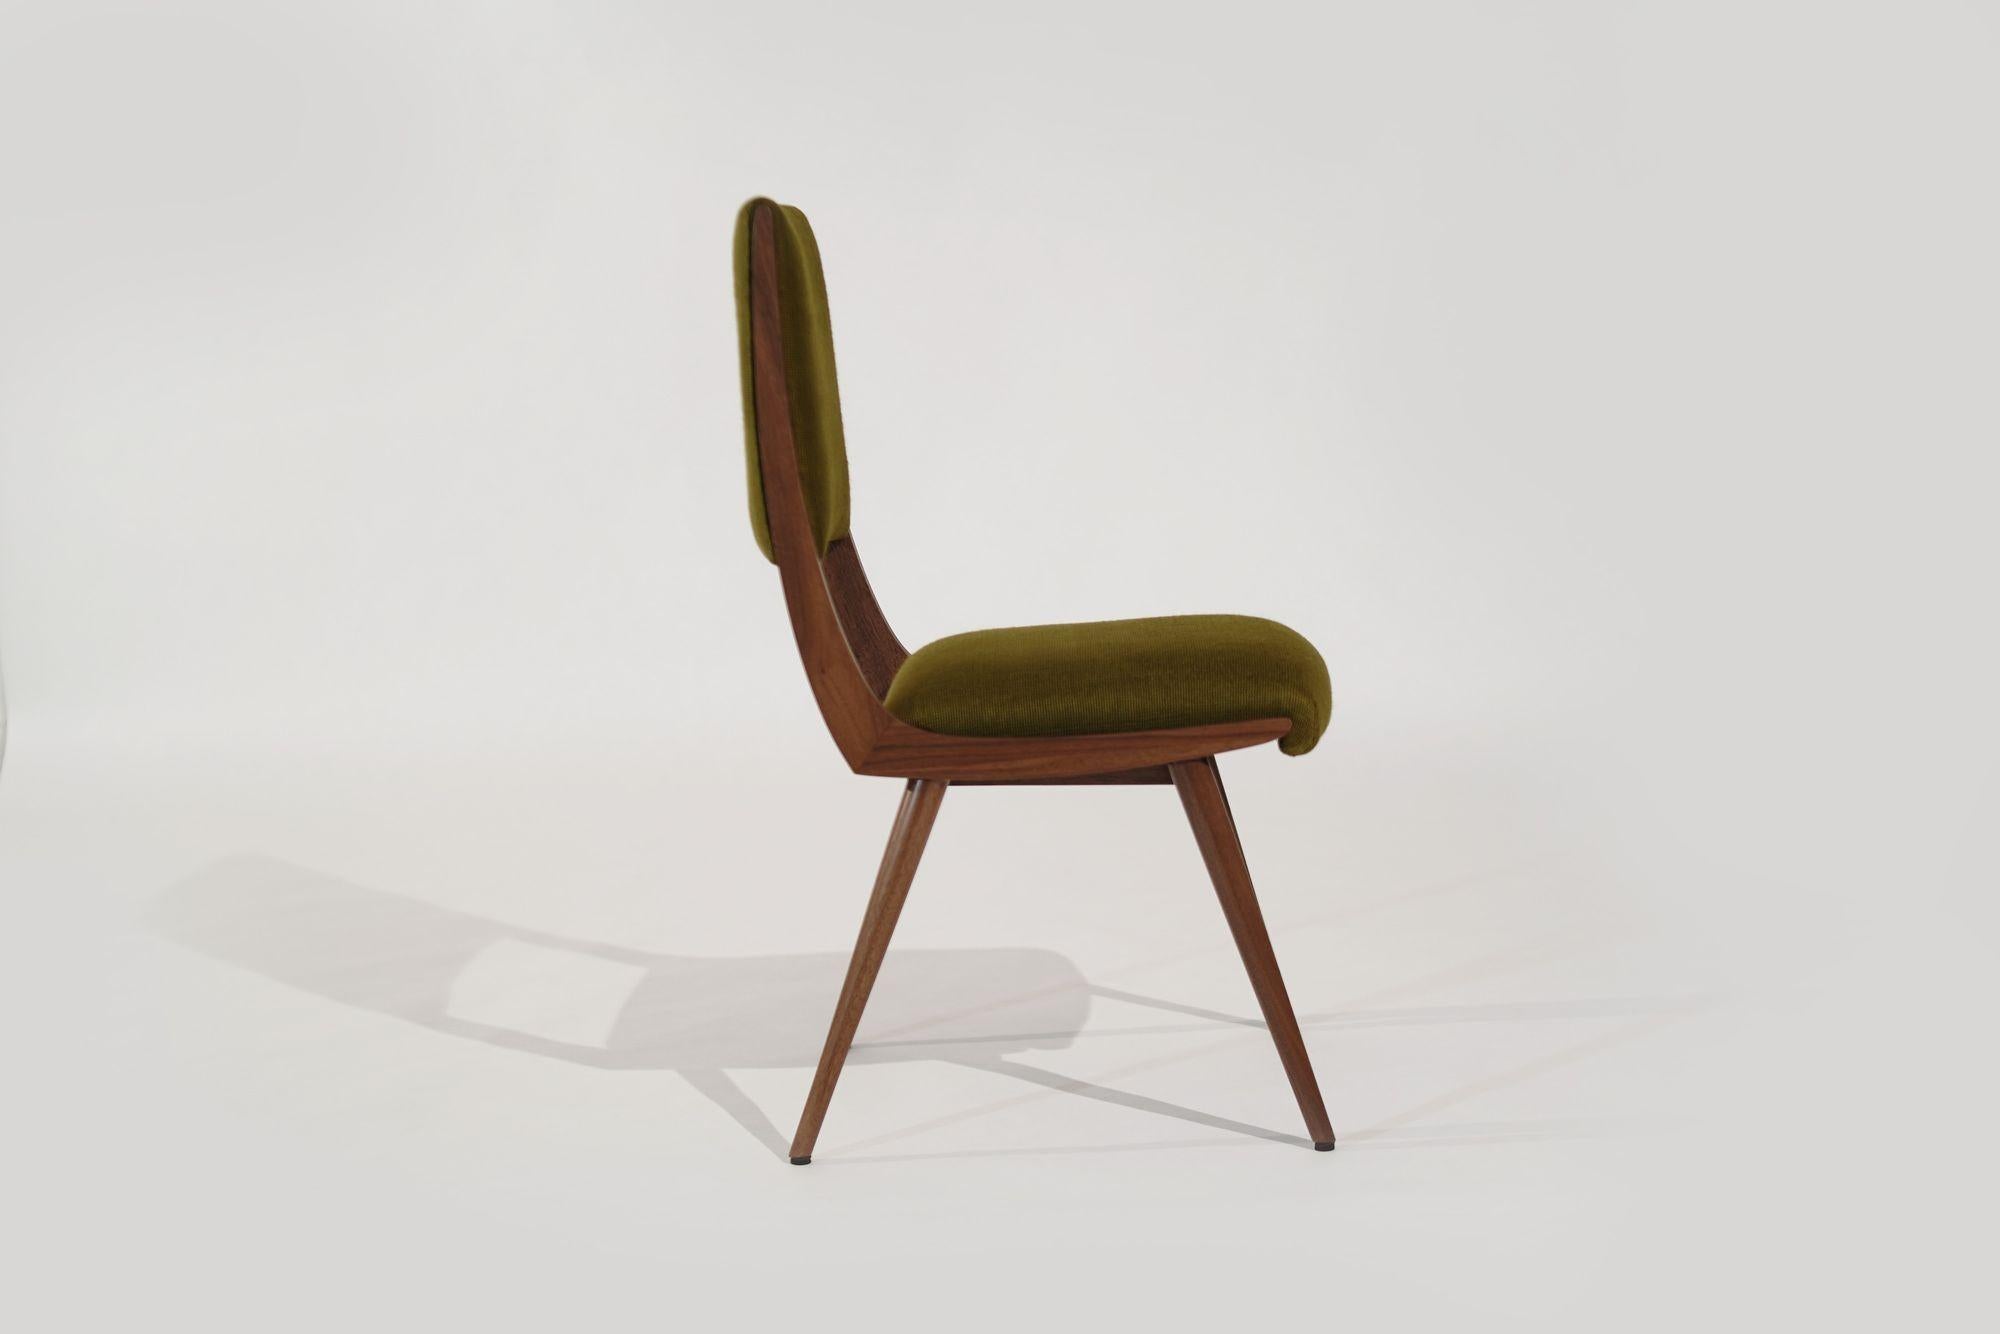 Der Parisiano Chair ist ein zeitloses Möbelstück, das von den ikonischen Entwürfen von Ico und Luisa Parisi inspiriert ist. Der aus massivem Nussbaum oder Eiche gefertigte Stuhl strahlt Eleganz und Raffinesse aus und eignet sich perfekt für jeden